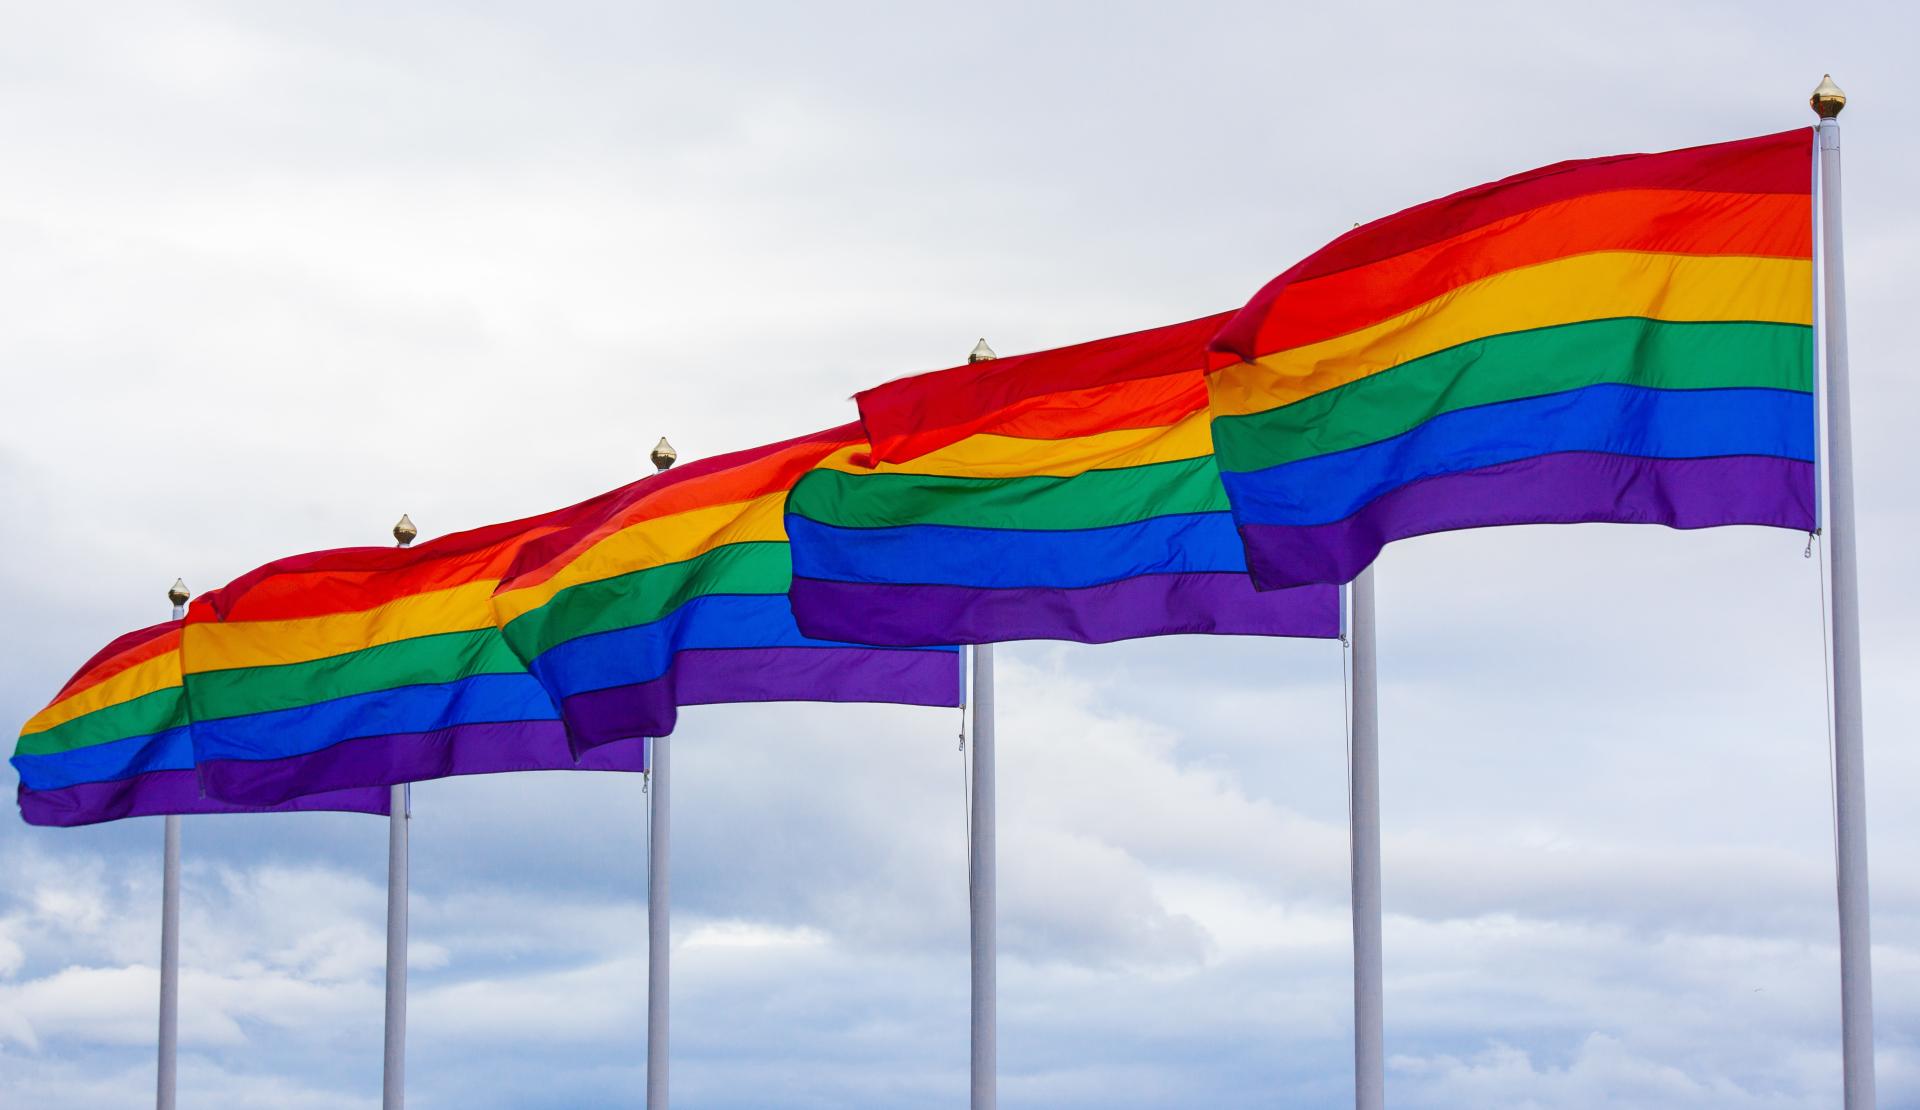 17 maja Światowym Dniem Przeciw Homofobii, Transobii i Bifobii.